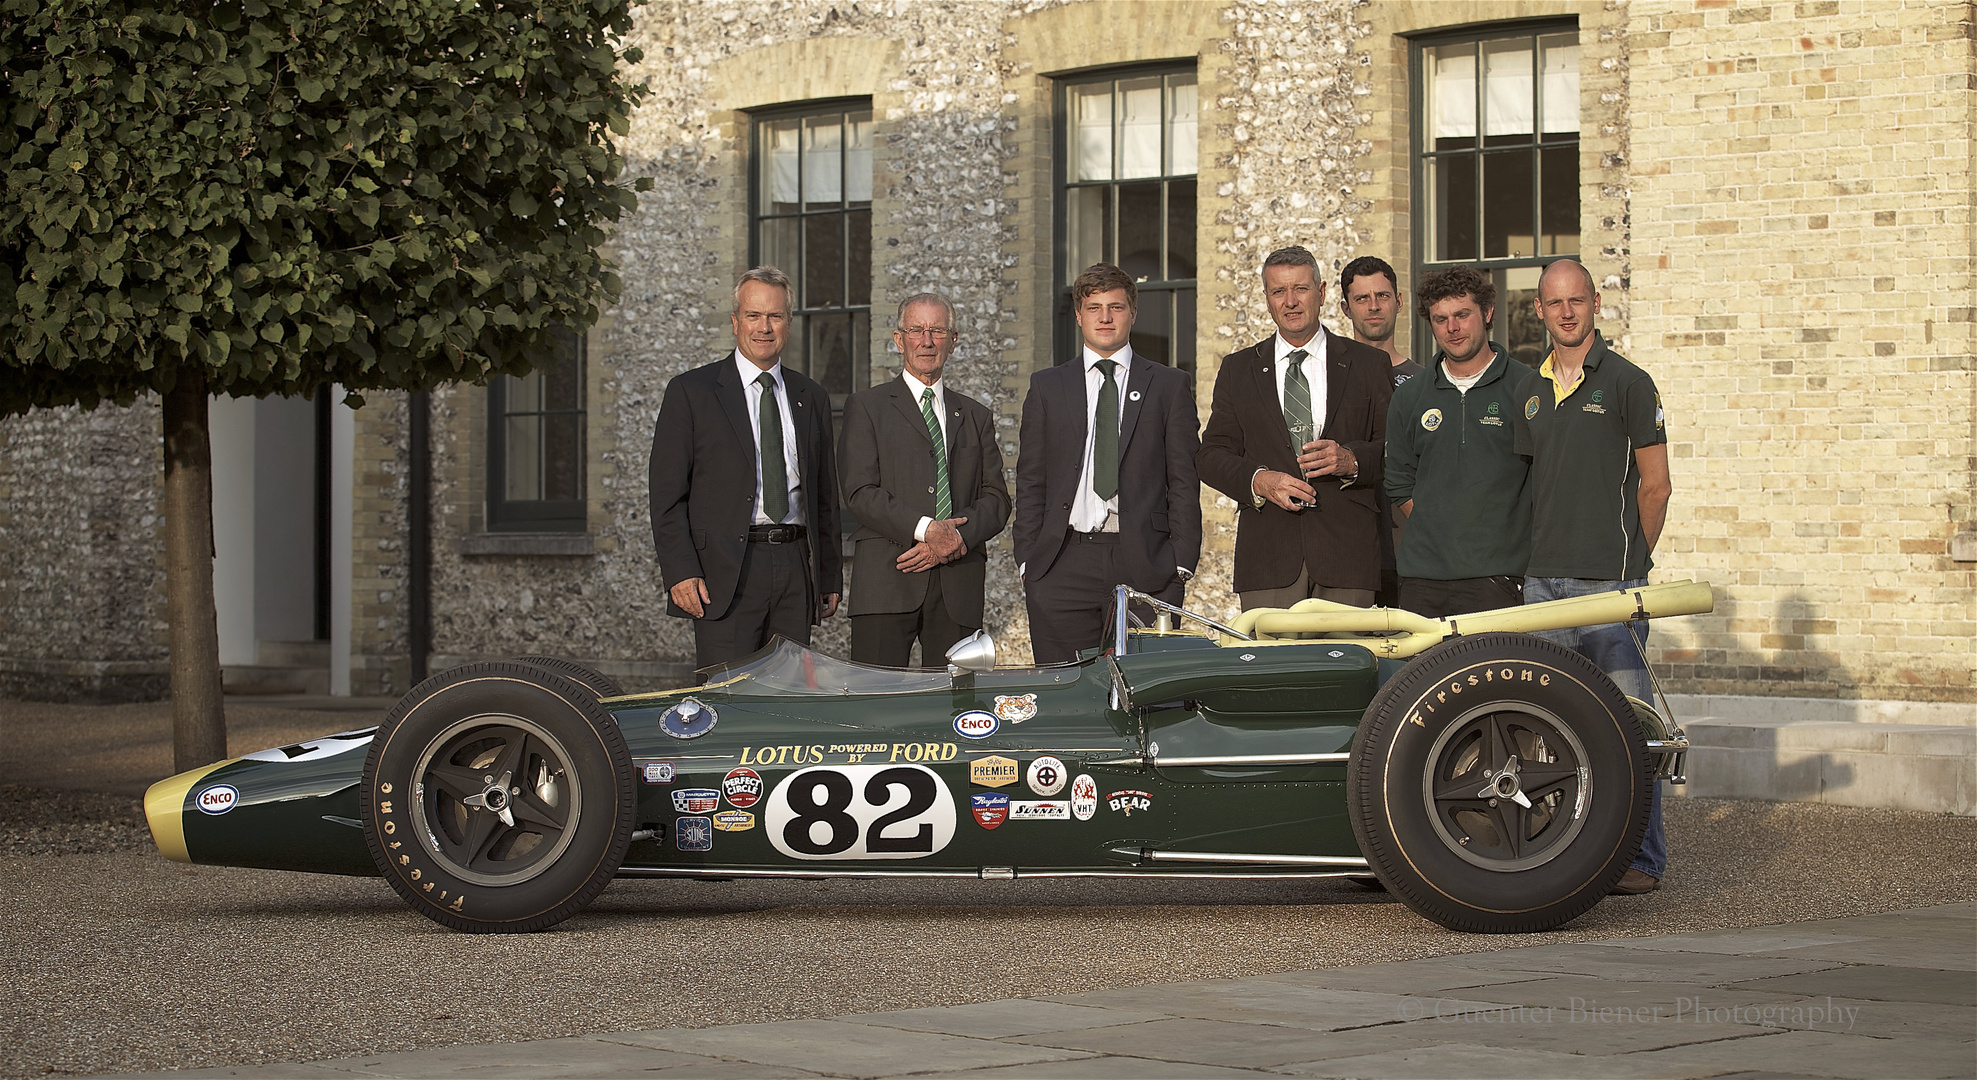 Indi 500 winner von 1965, Lotus 38 (Jim Clark) und Team Lotus Classic von dem "Kennels"